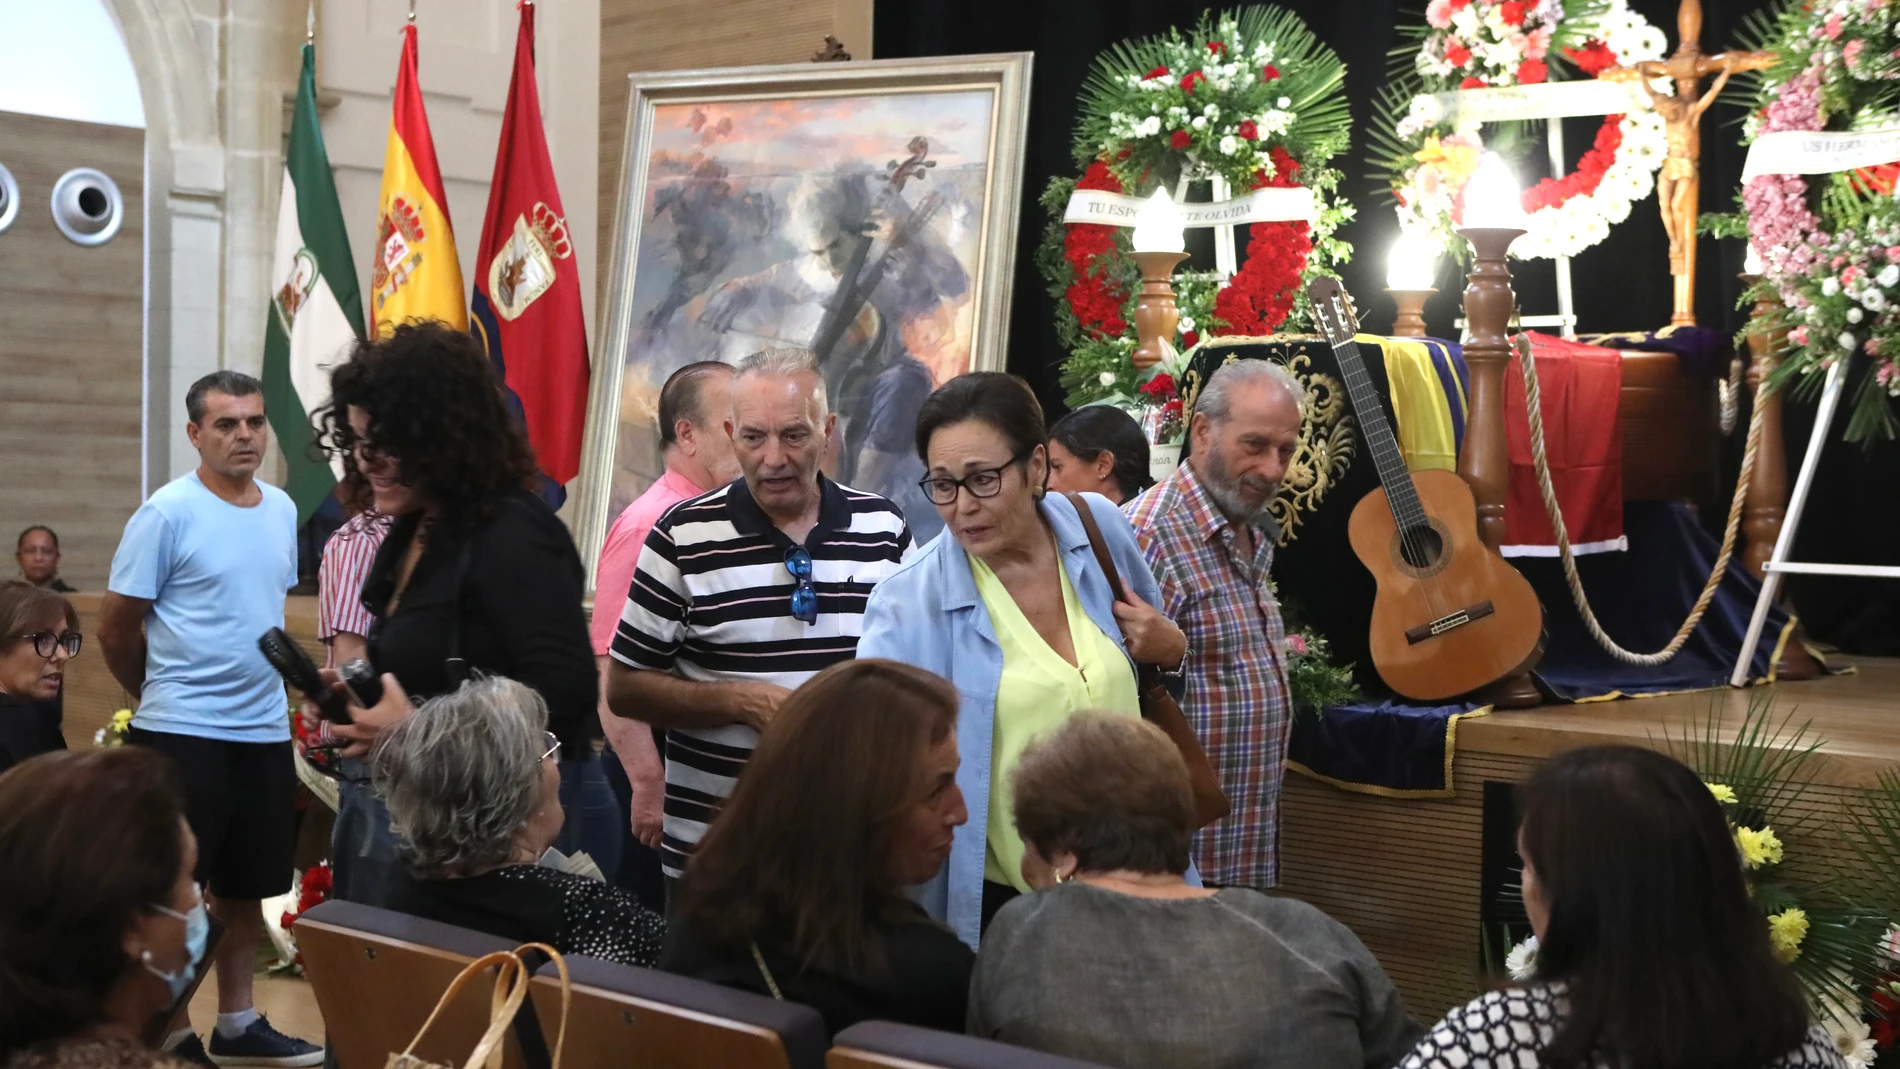 La viuda de Manolo Sanlúcar recibe las condolencias de vecinos y amigos